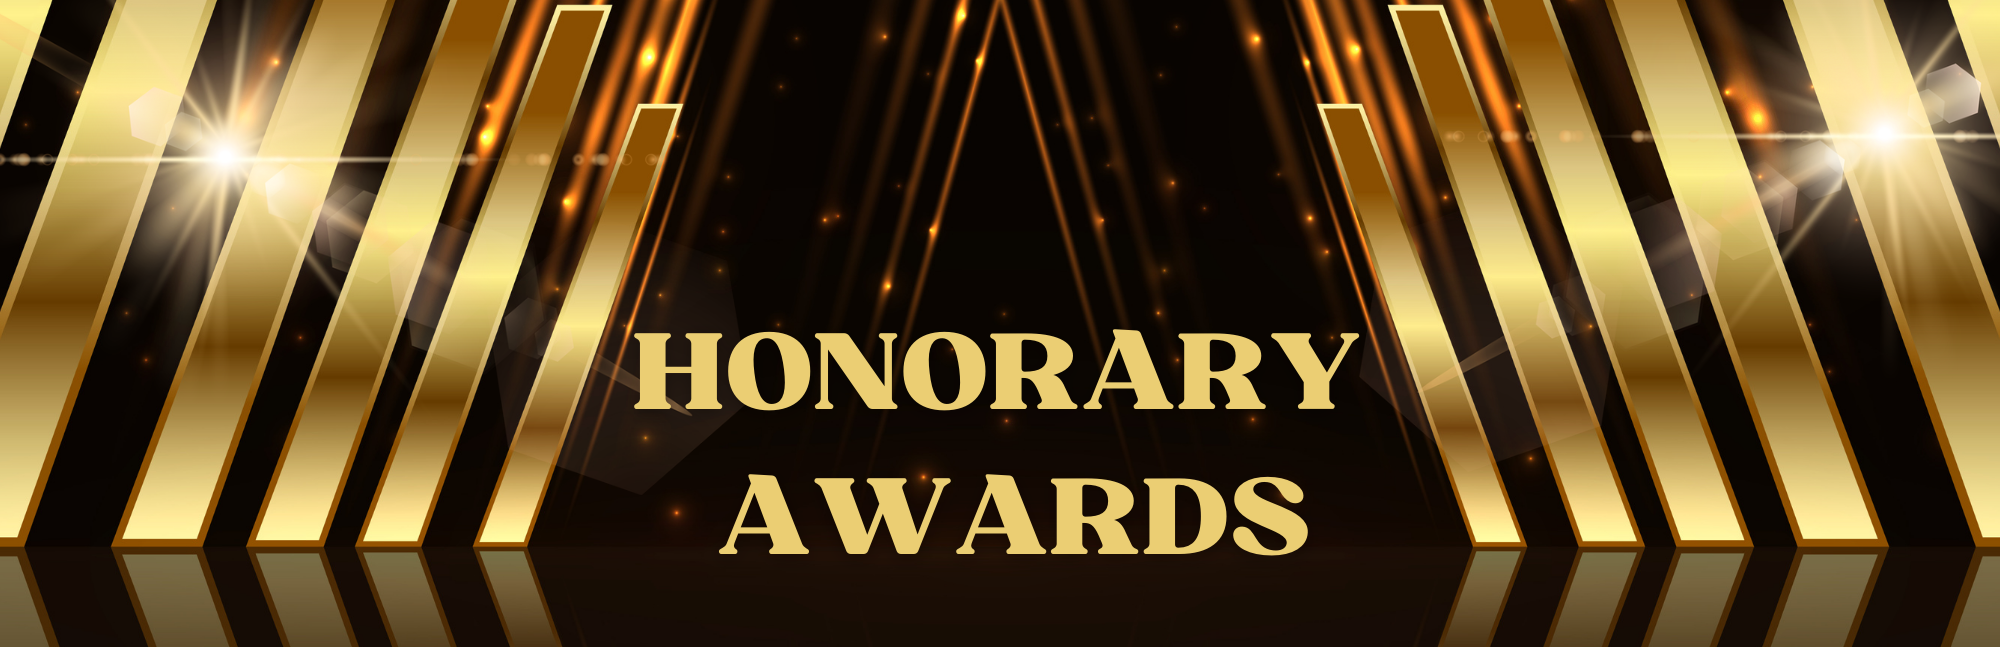 HonoraryAwards.png